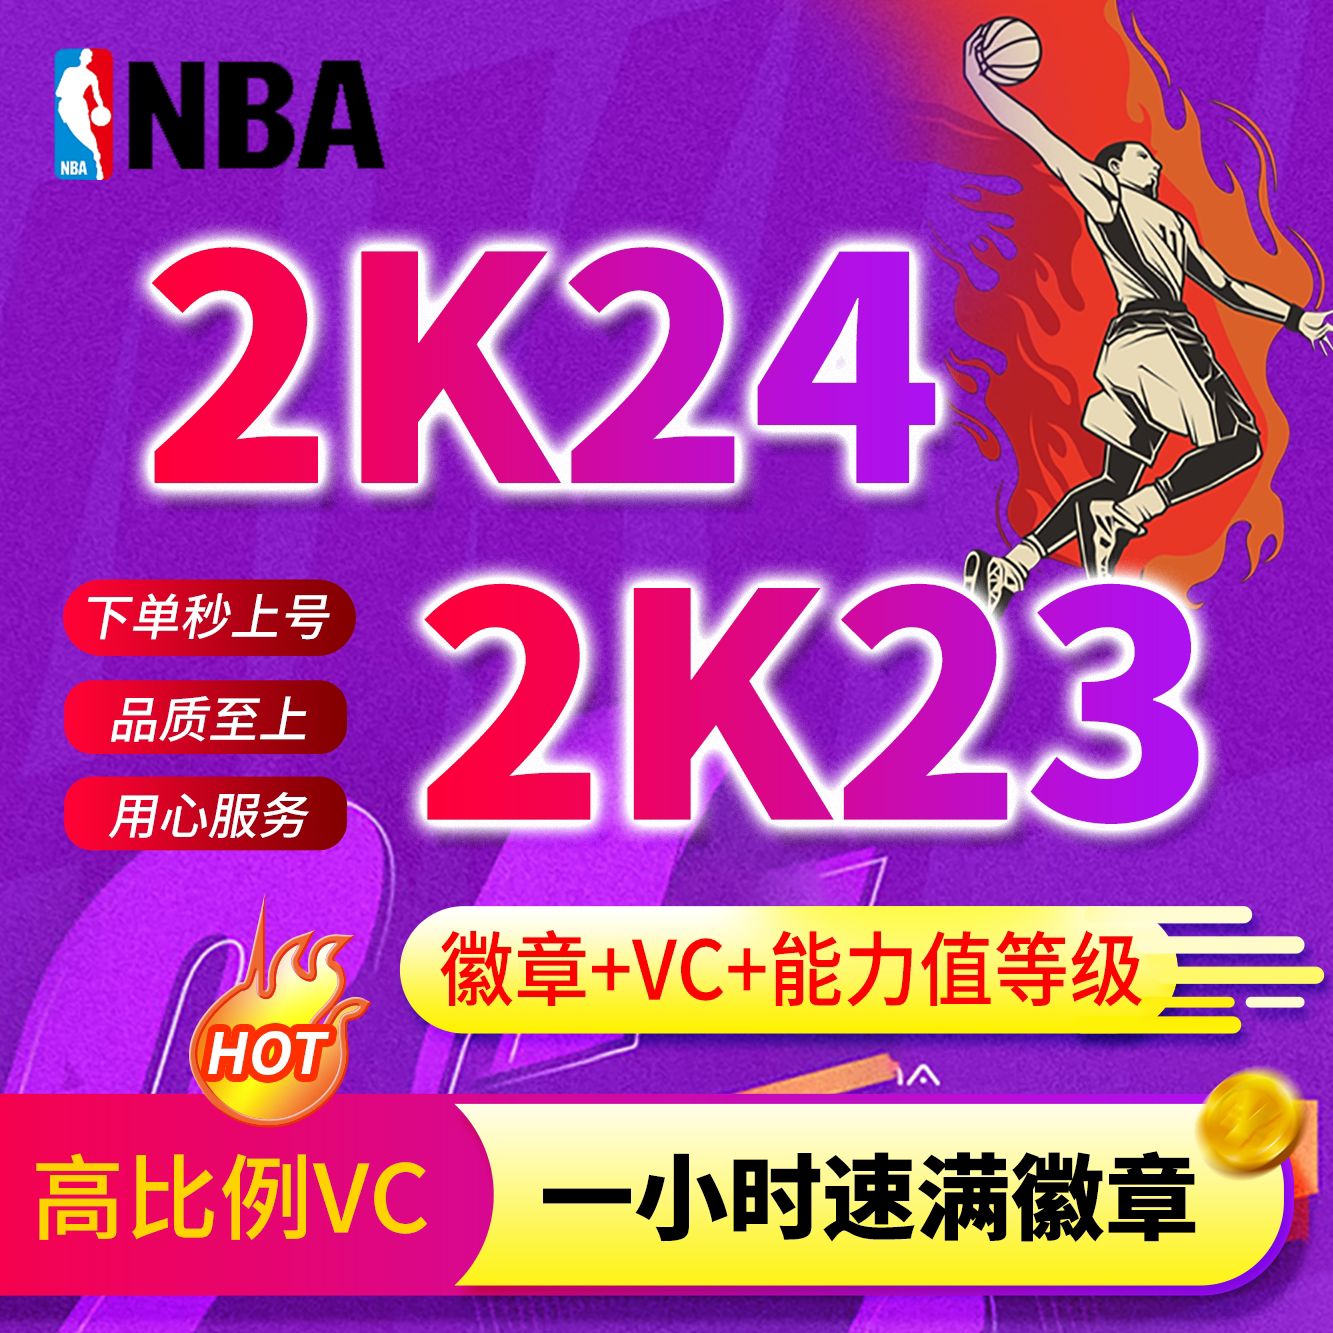 NBA2k24刷VC金币MT徽章能力值